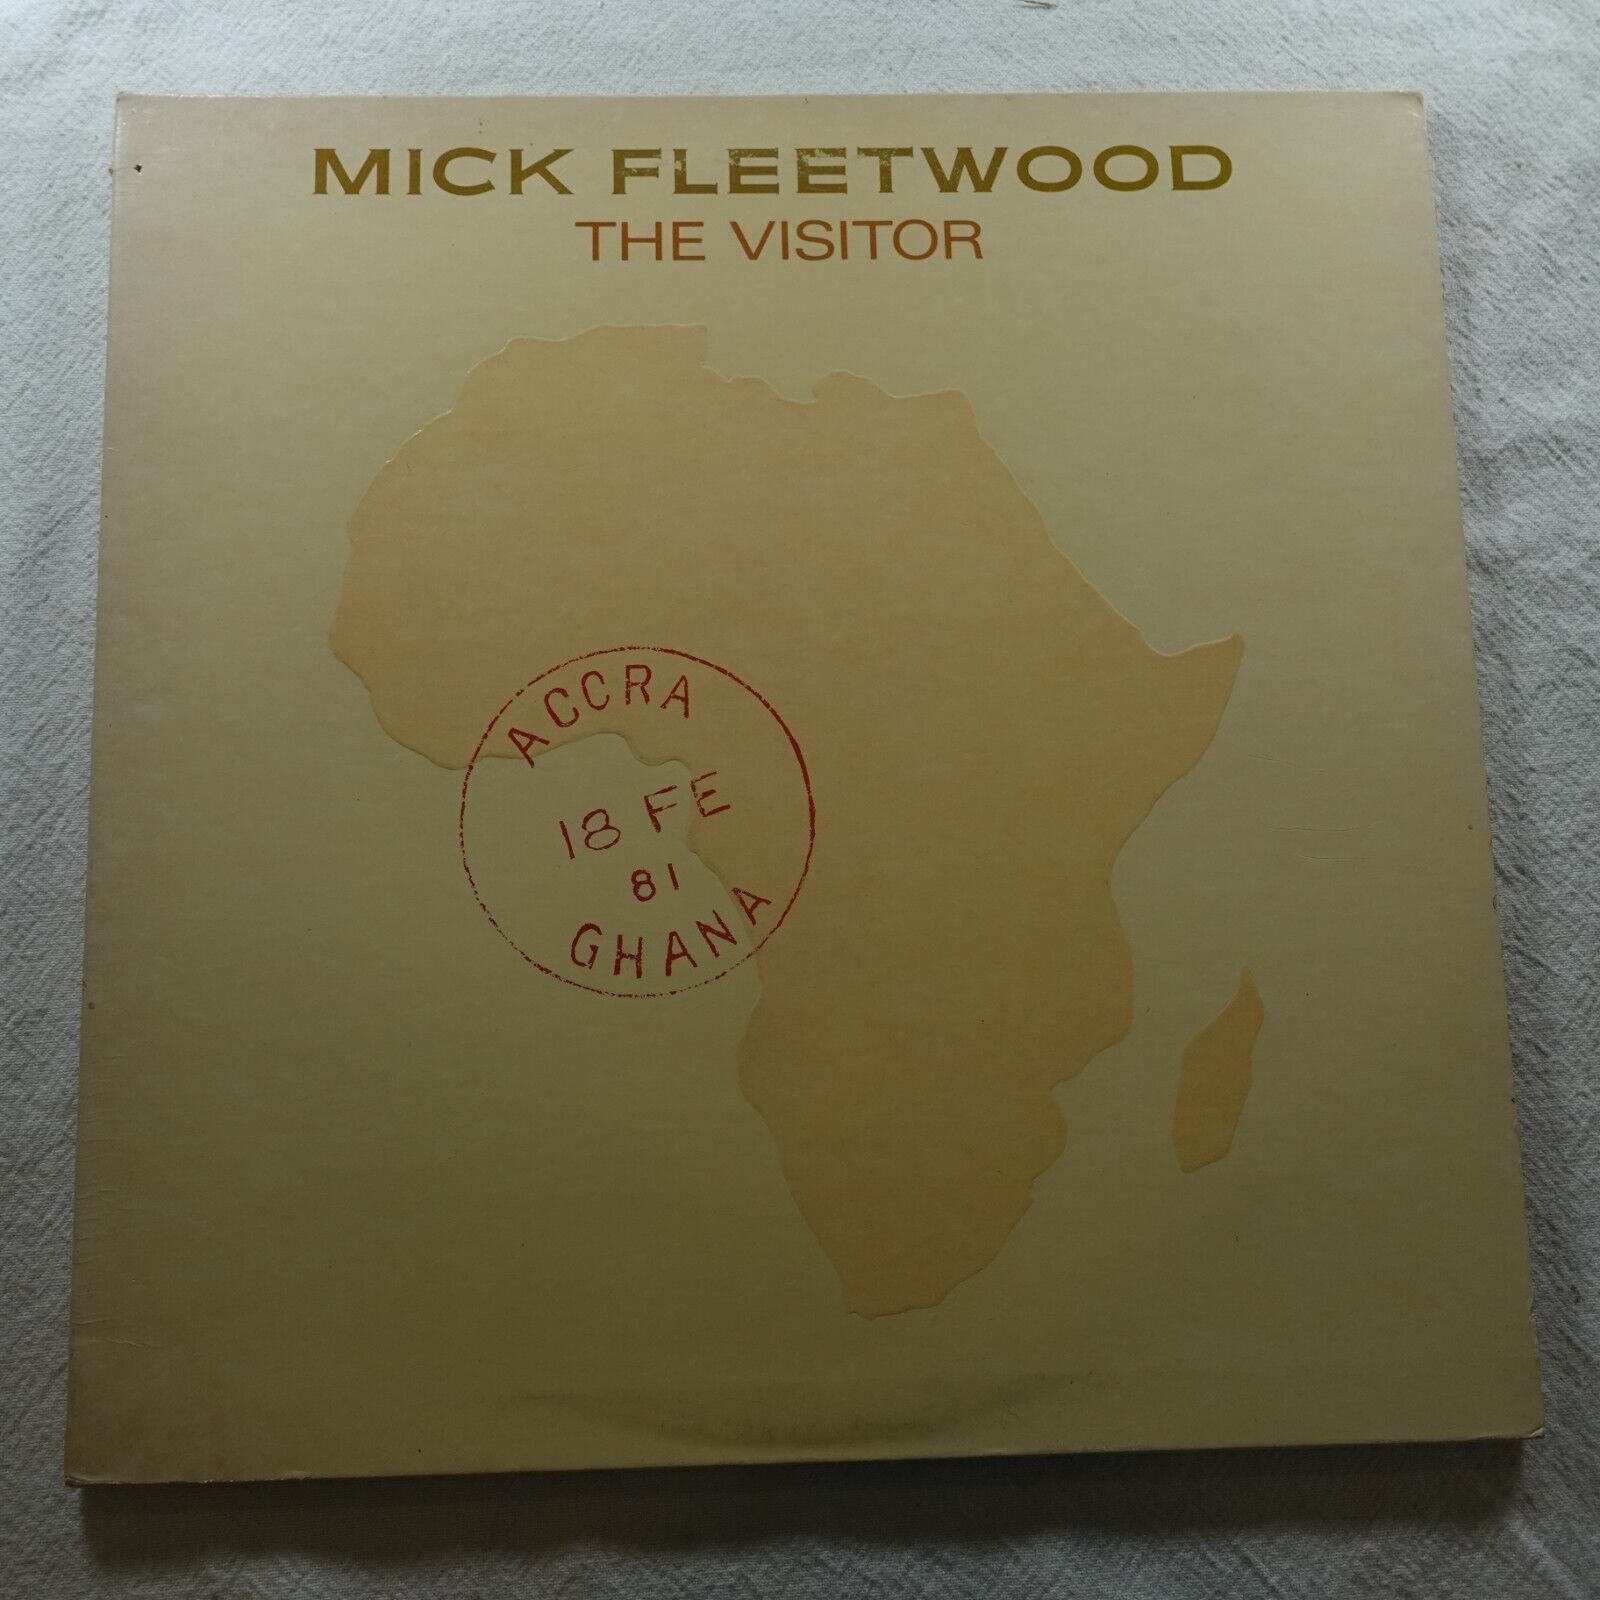 Mick Fleetwood The Visitor RCA 4080 Record Album Vinyl LP